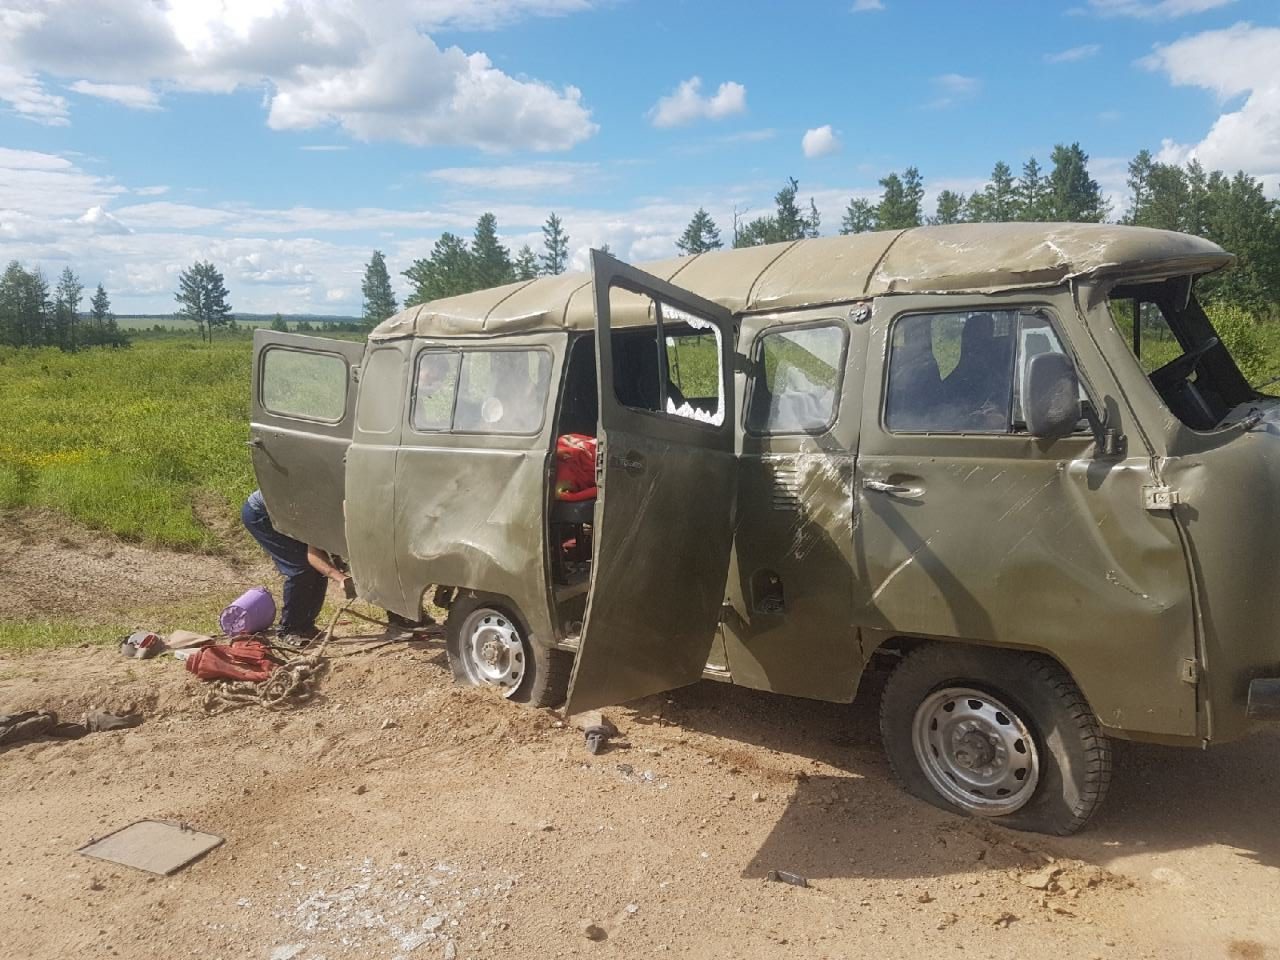 Житель Яблоново угнал и разбил УАЗ администрации, который не смог взять для поездки на рыбалку